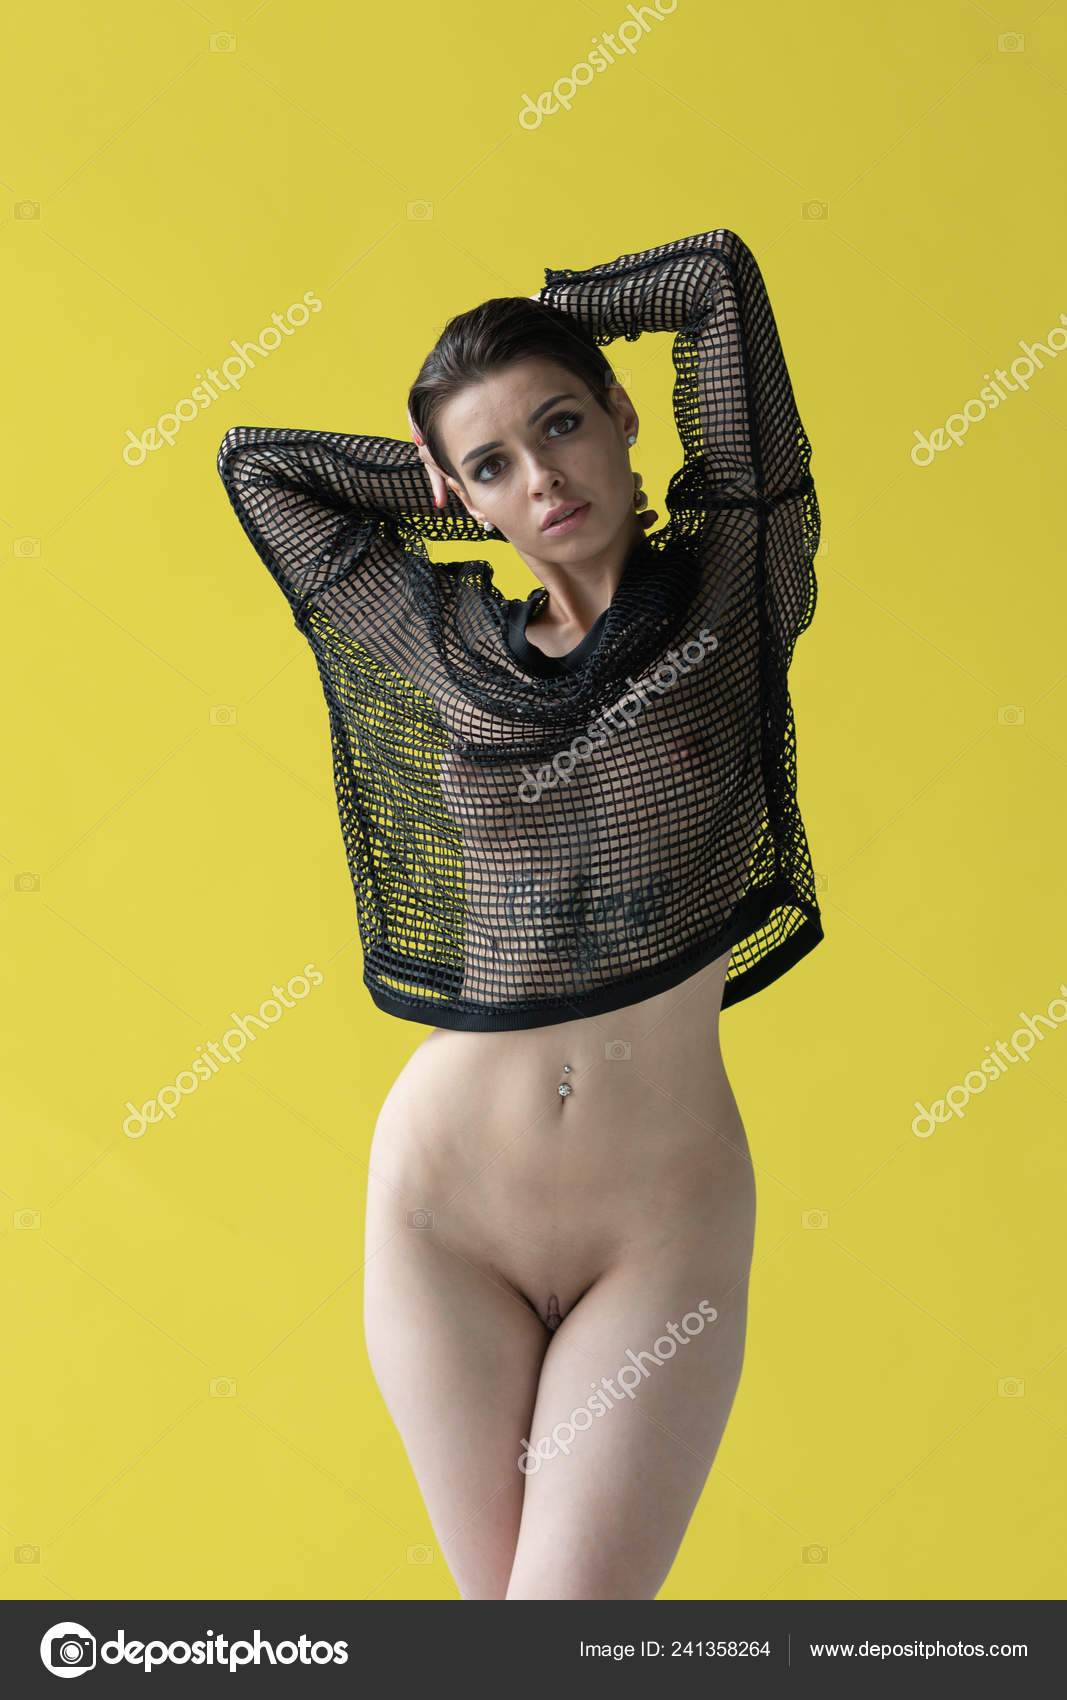 https://st4n.depositphotos.com/10086424/24135/i/1600/depositphotos_241358264-stock-photo-young-beautiful-girl-posing-nude.jpg